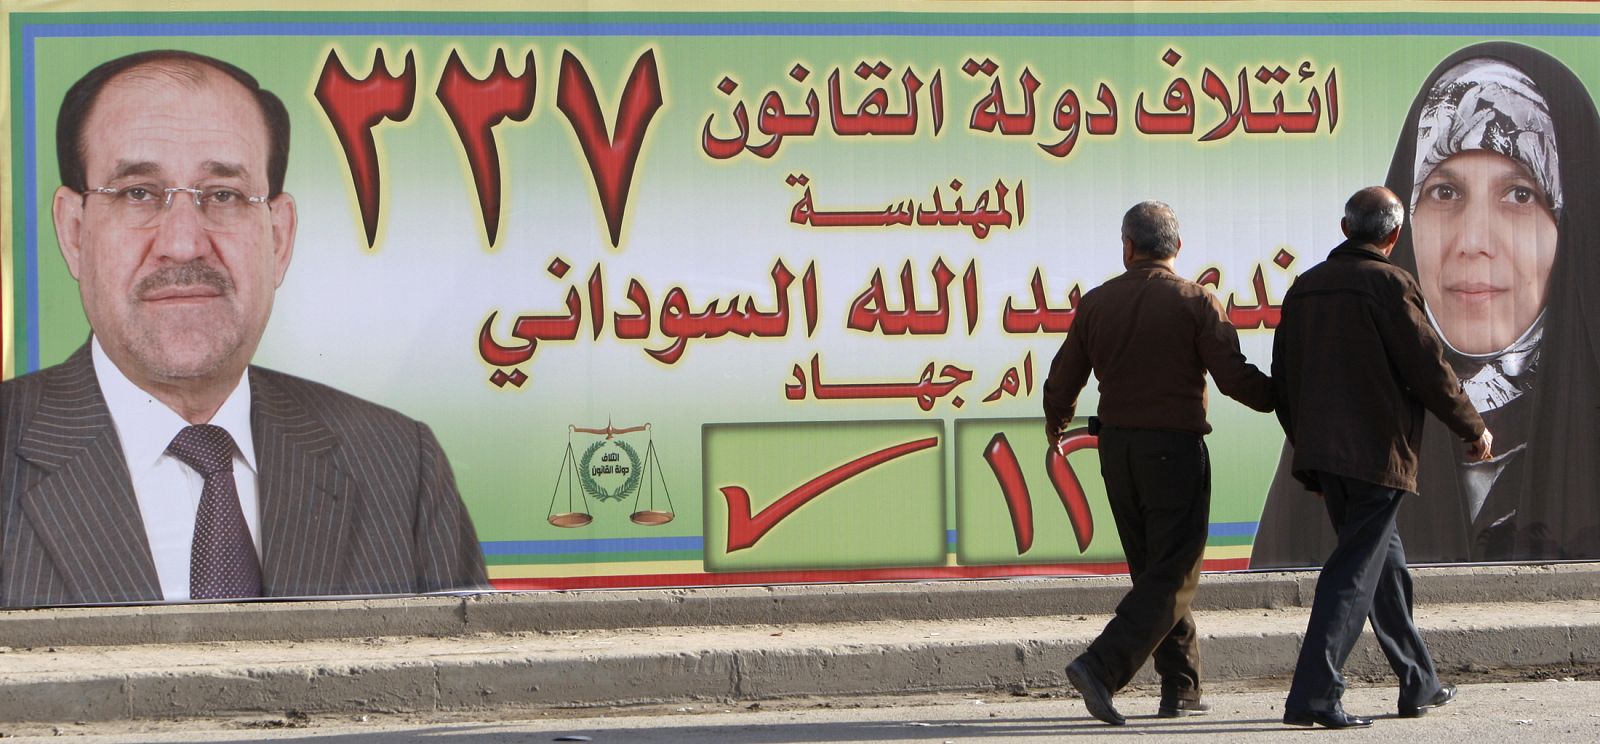 Dos iraquíes pasean junto a un póster electoral que promueve a Nada- al-Sudani y el primer ministro Nuri- al Maliki en Bagdad.